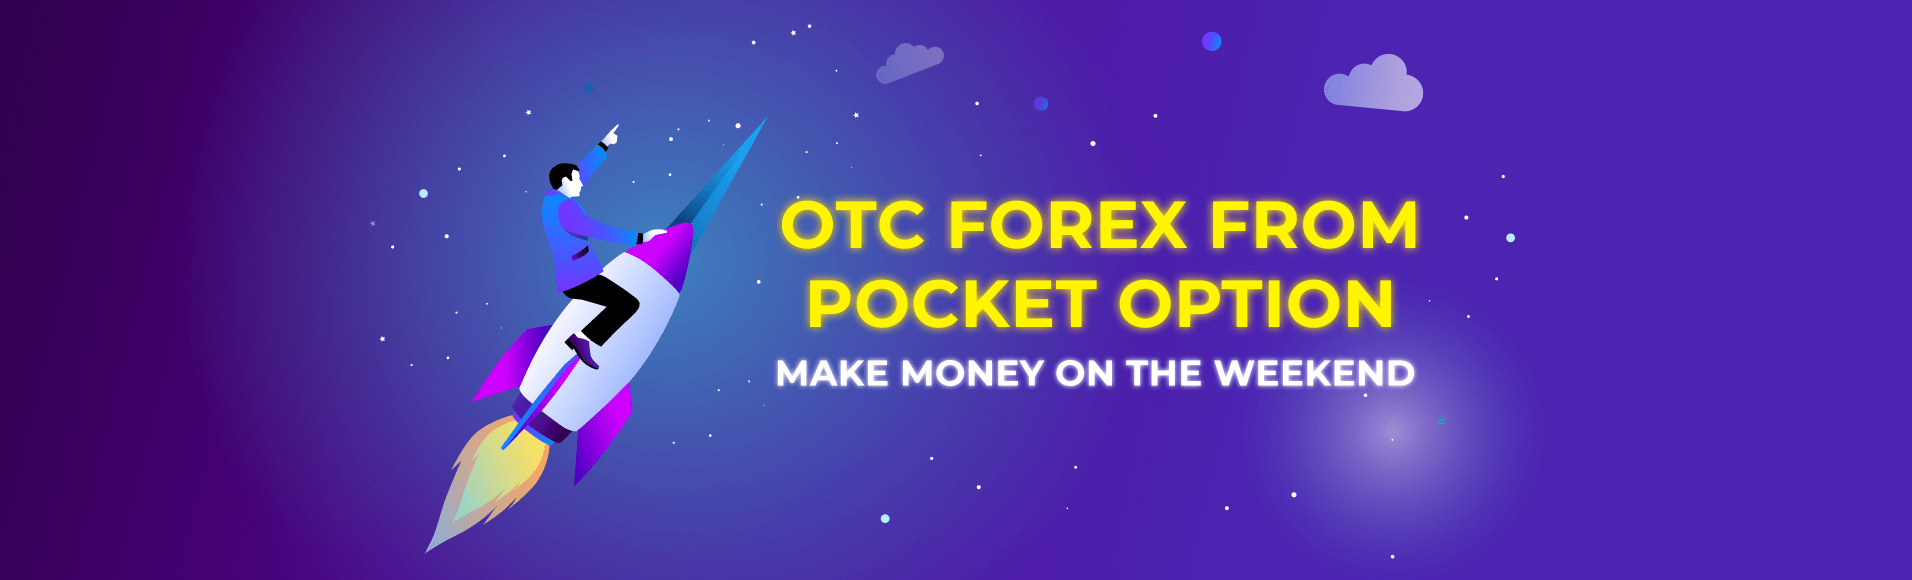 OTC Forex dari Pocket Option - hasilkan uang di akhir pekan